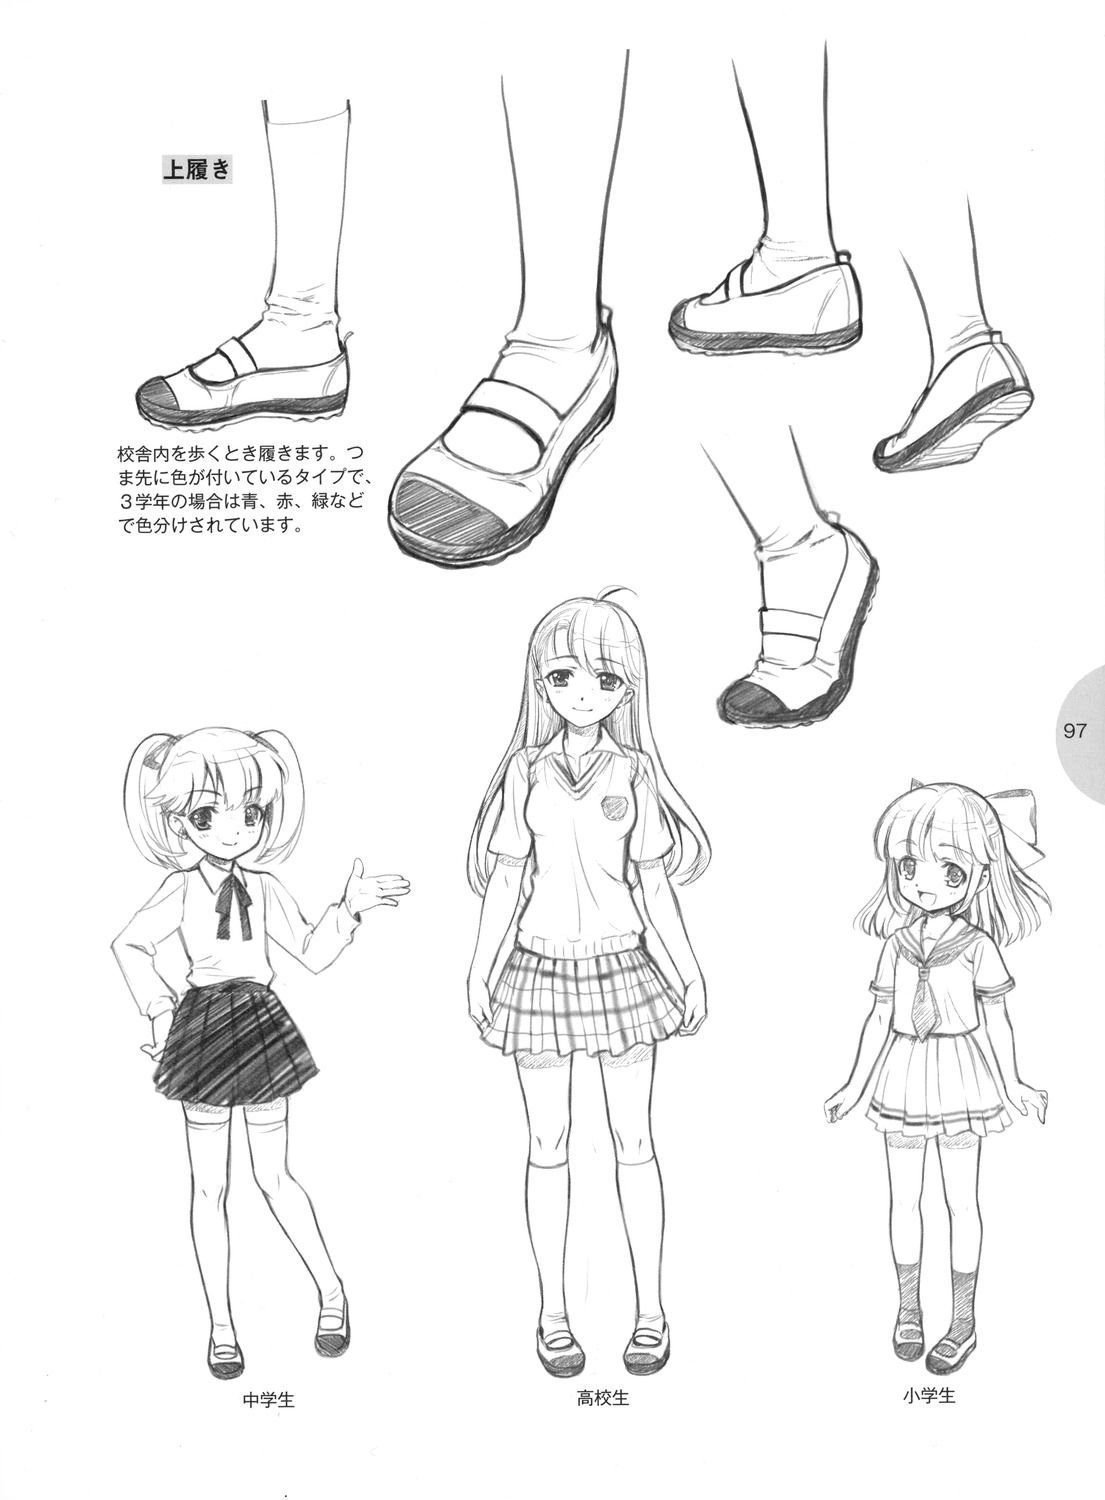 Обувь в стиле аниме рисунки фото